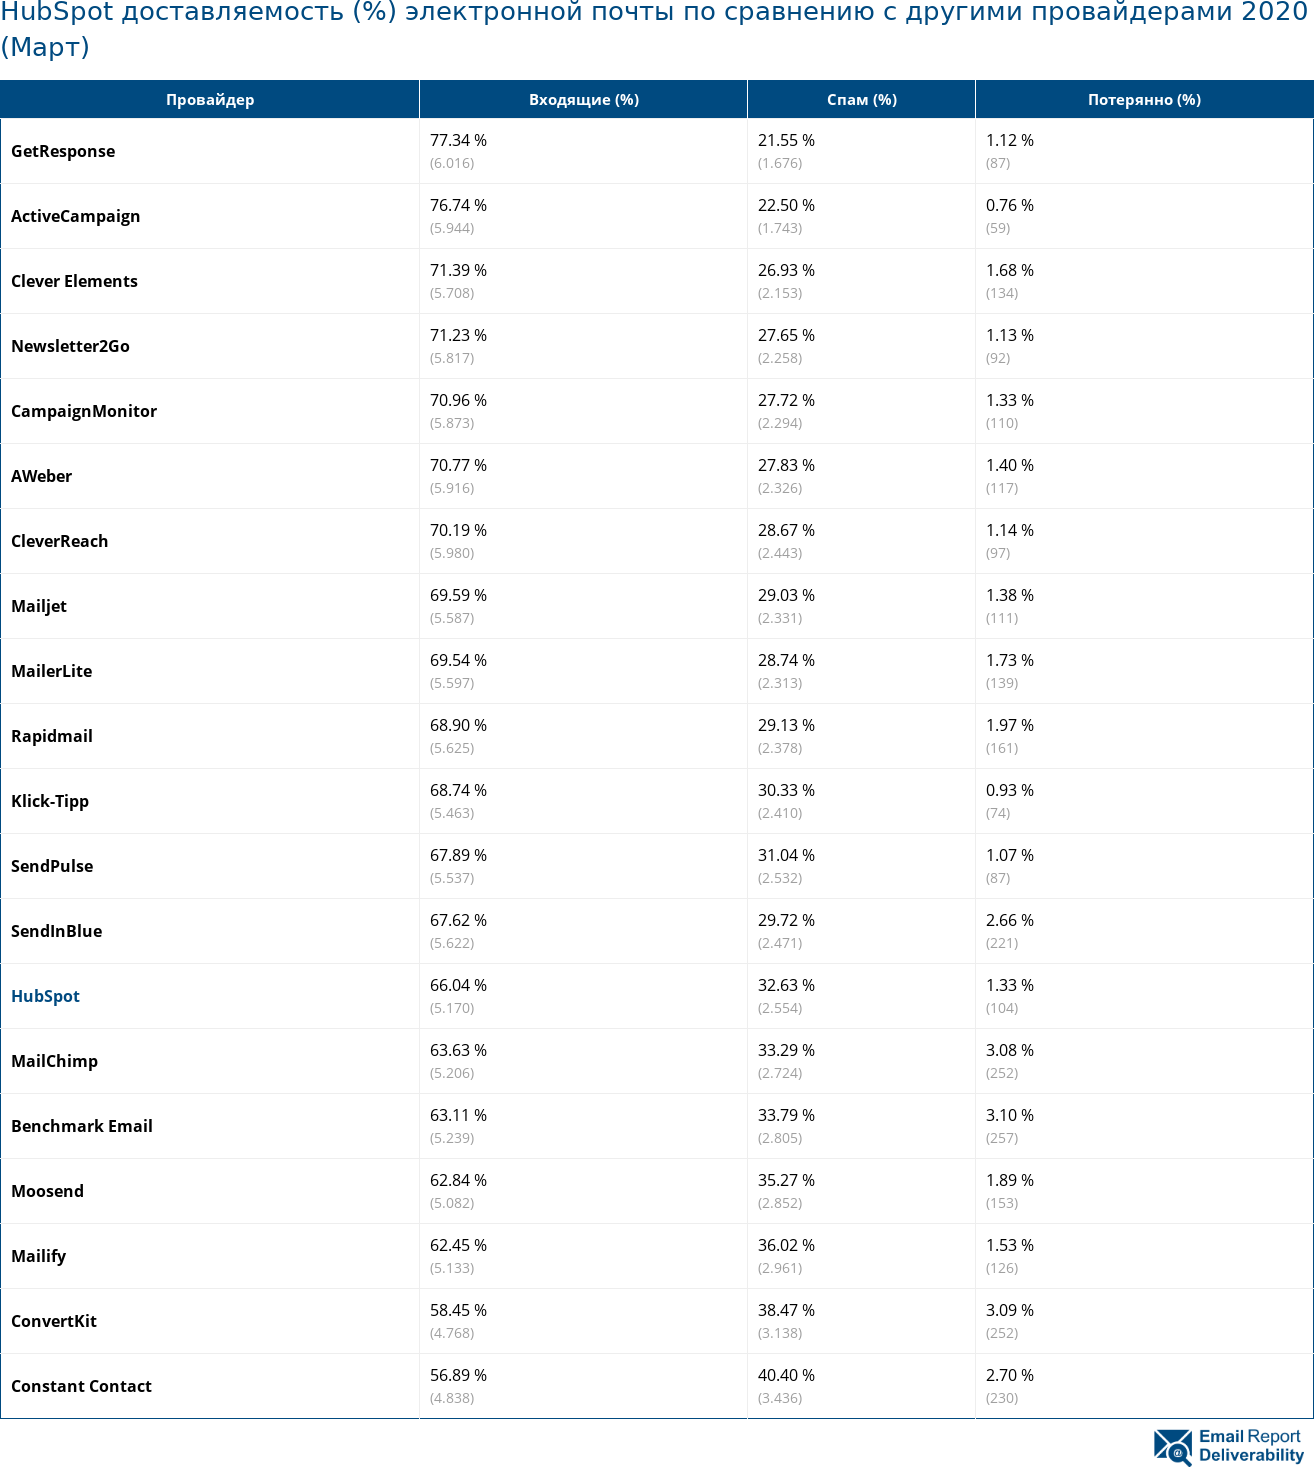 HubSpot доставляемость (%) электронной почты по сравнению с другими провайдерами 2020 (Март)